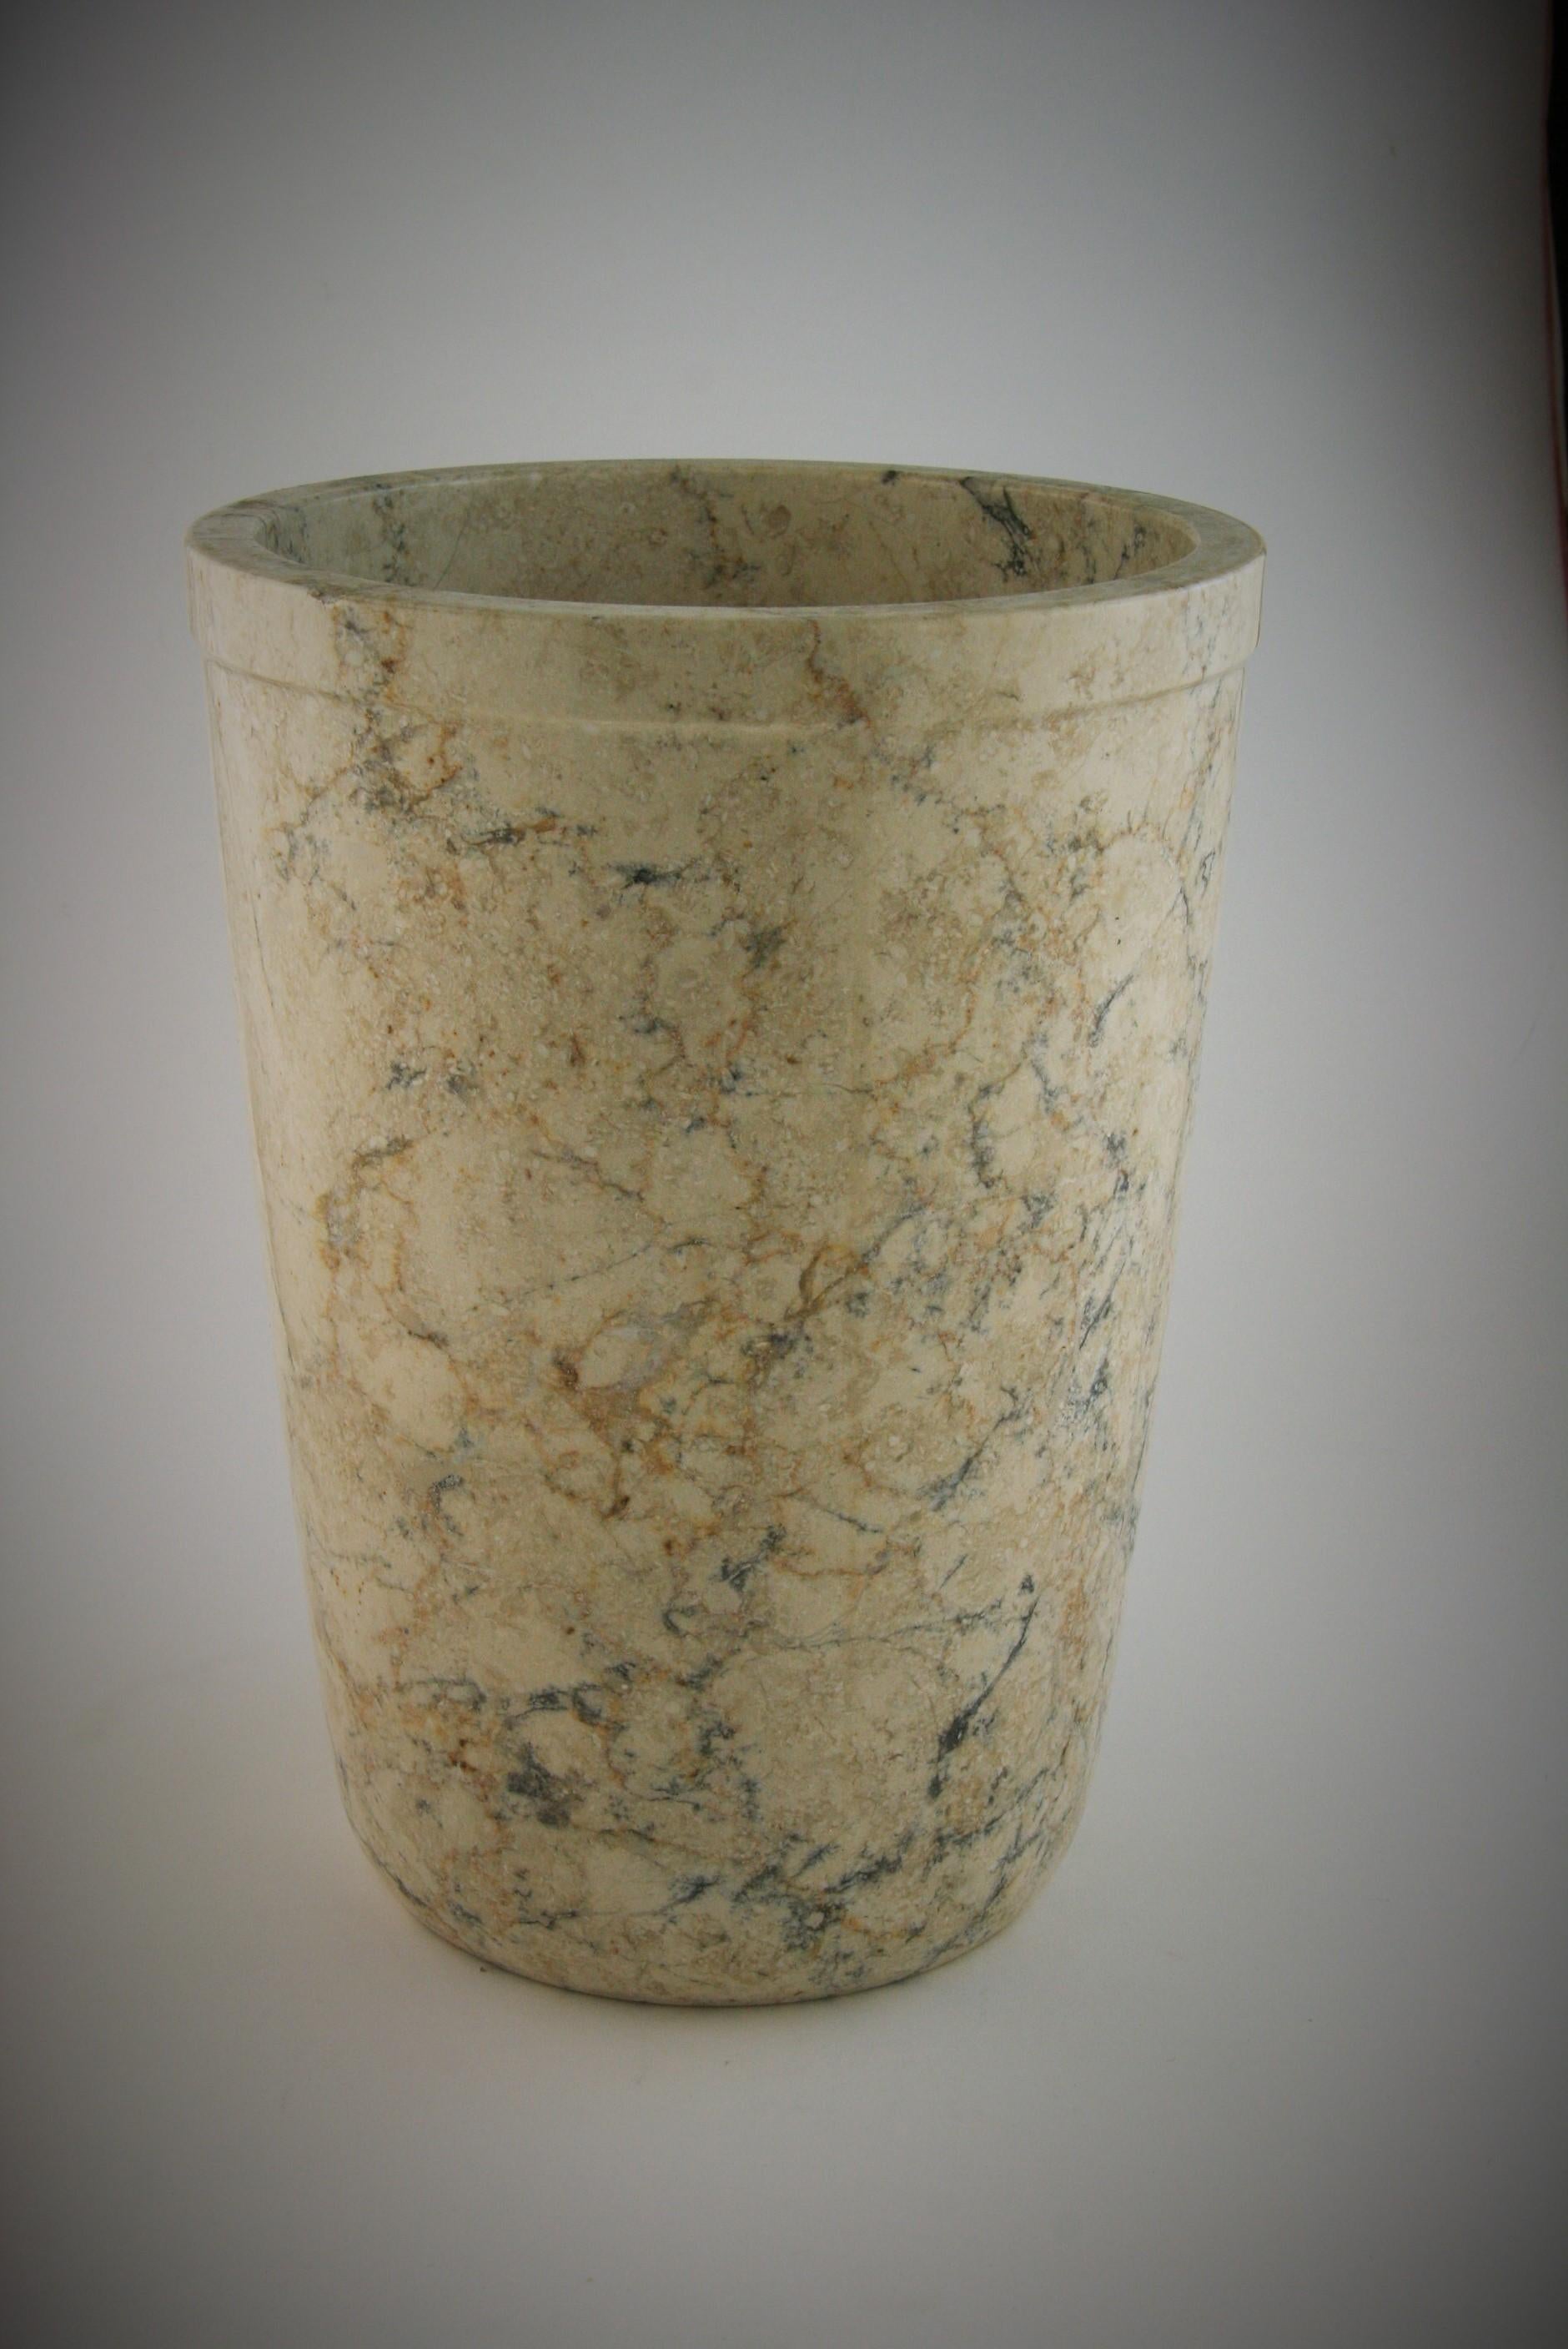 8-237 polierter italienischer Marmor Minimalistische Vase/Weinkühler mit Erdtönen und schwarzer Maserung
Innen poliert.